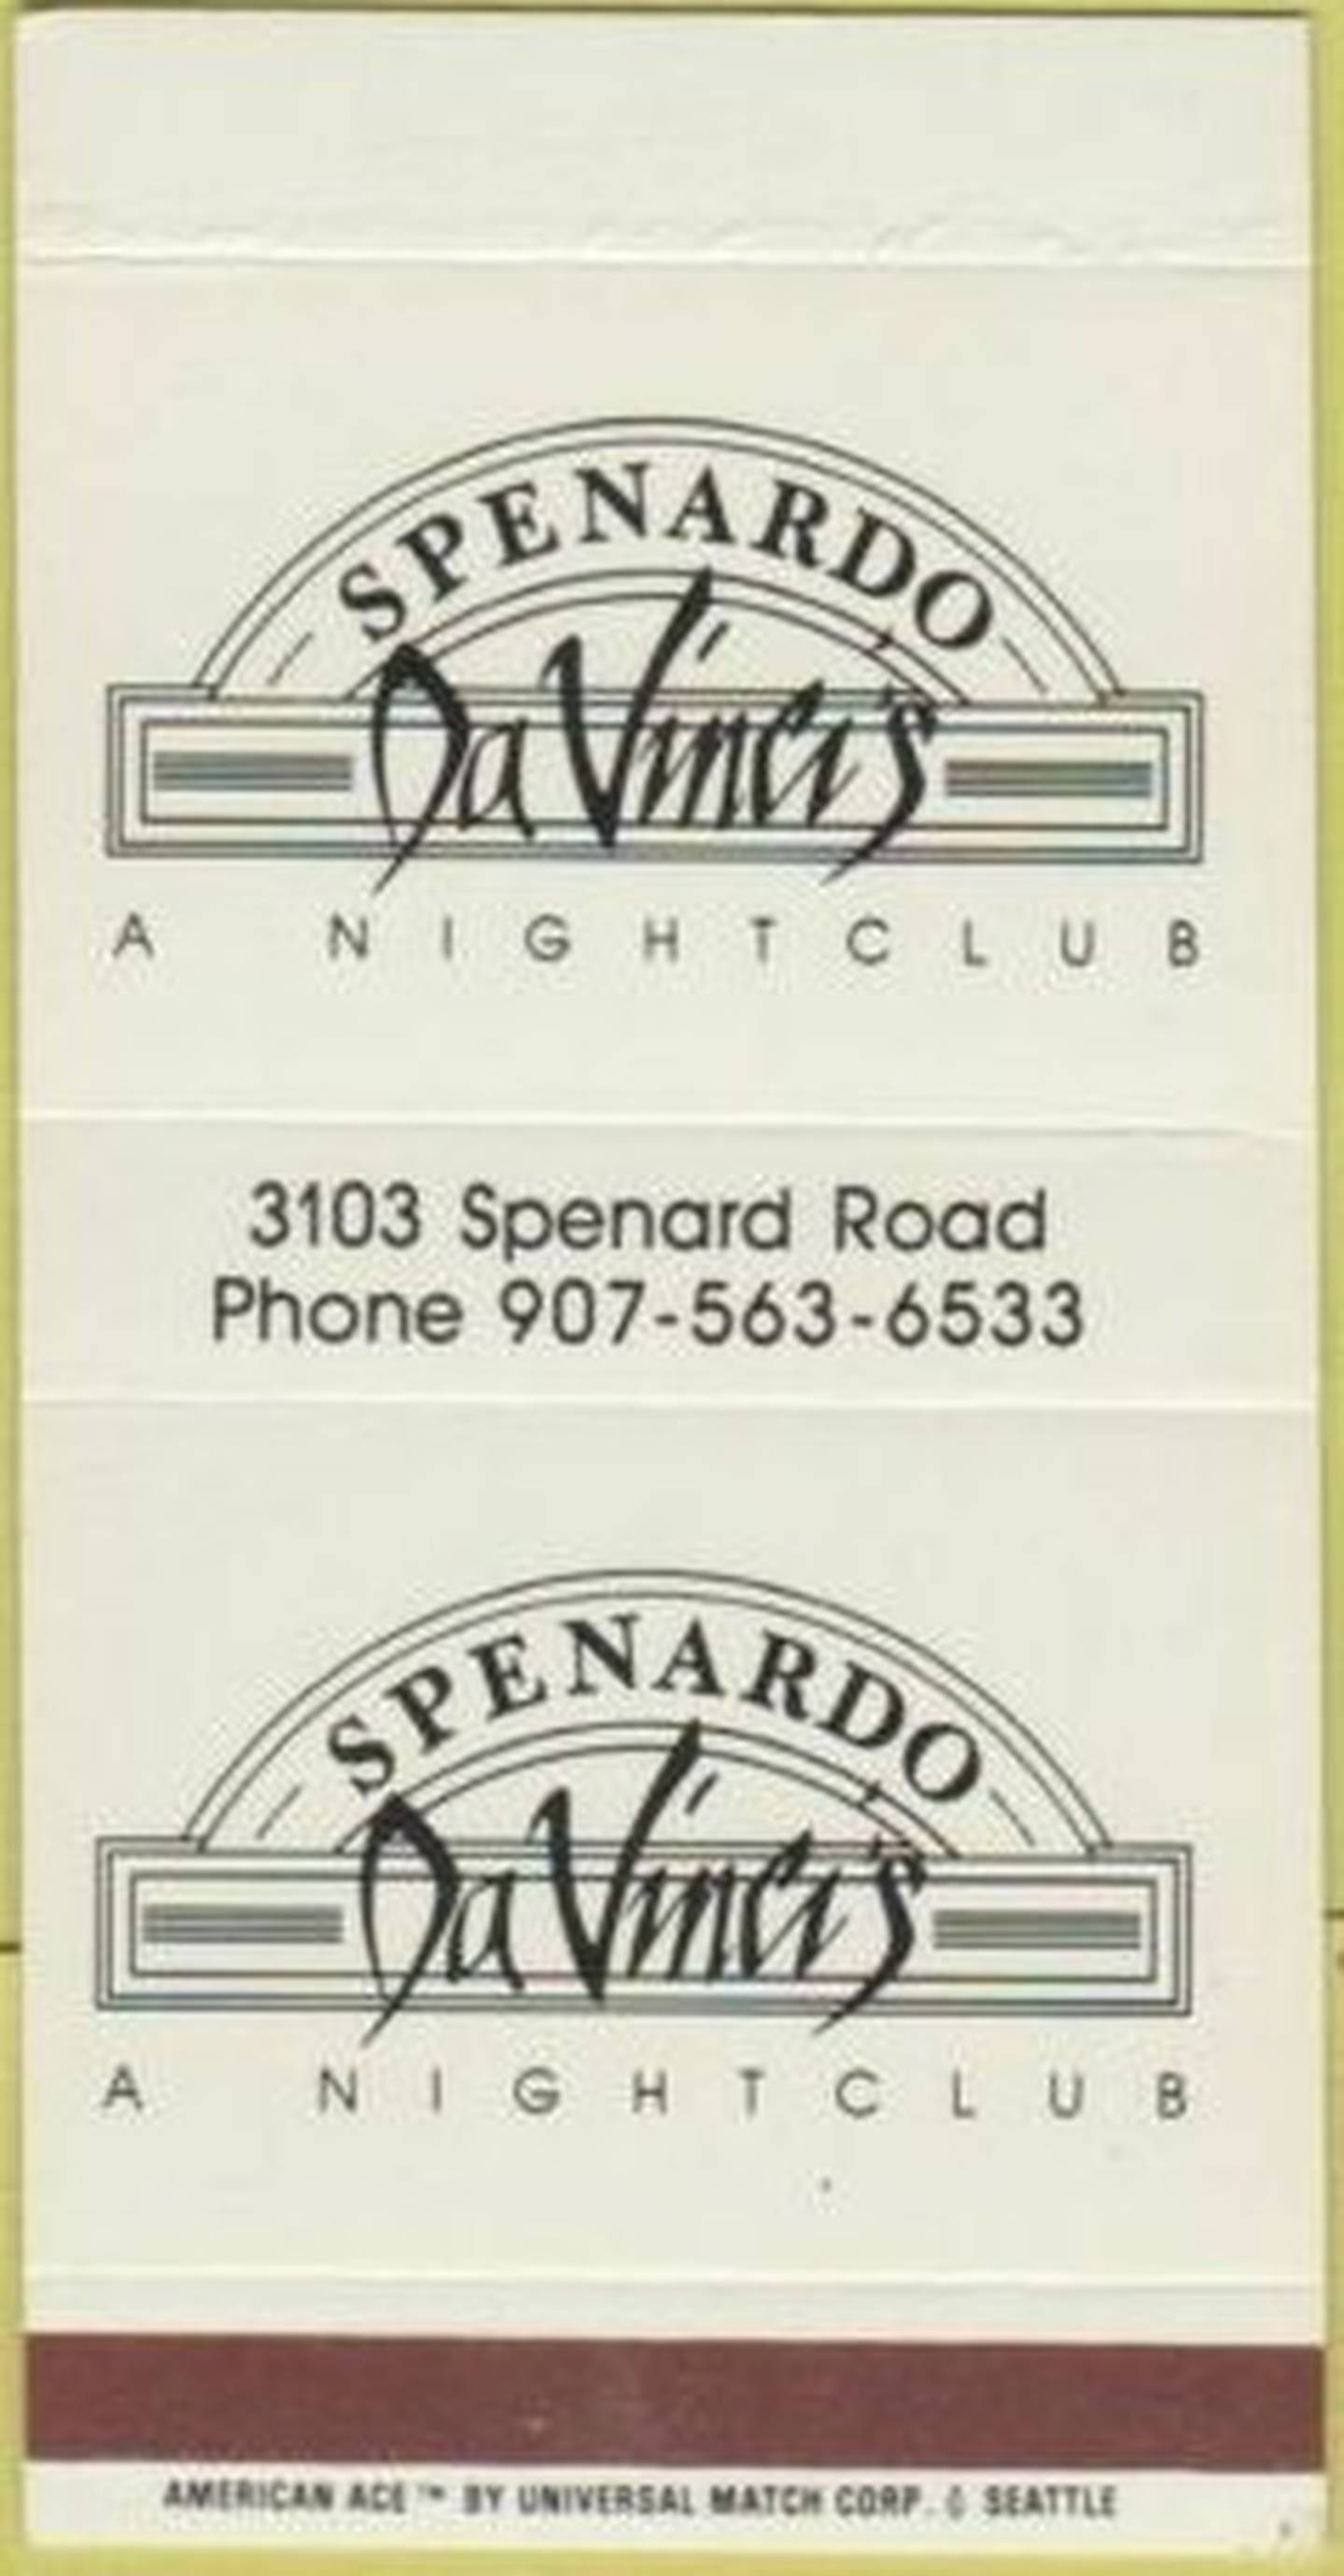 Matchbook for former Anchorage bar  Spenardo da Vinci's, circa 1984